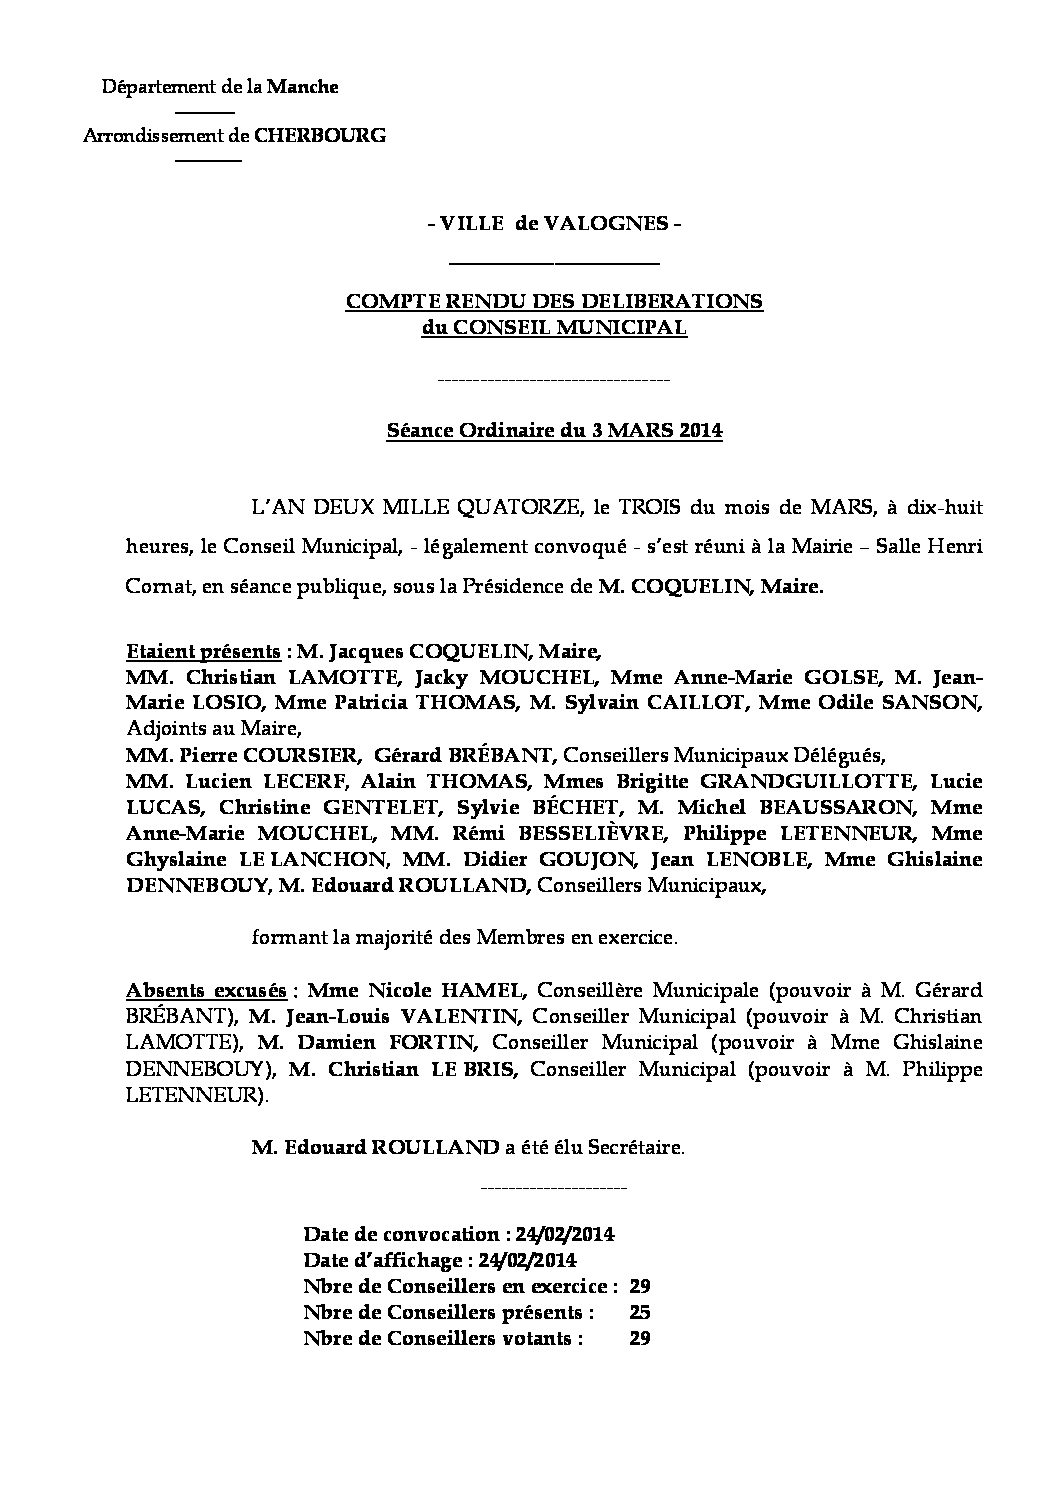 Extrait du registre des délibérations du 03-03-2014 - Compte rendu des questions soumises à délibération lors de la séance du Conseil Municipal du 3 mars 2014.